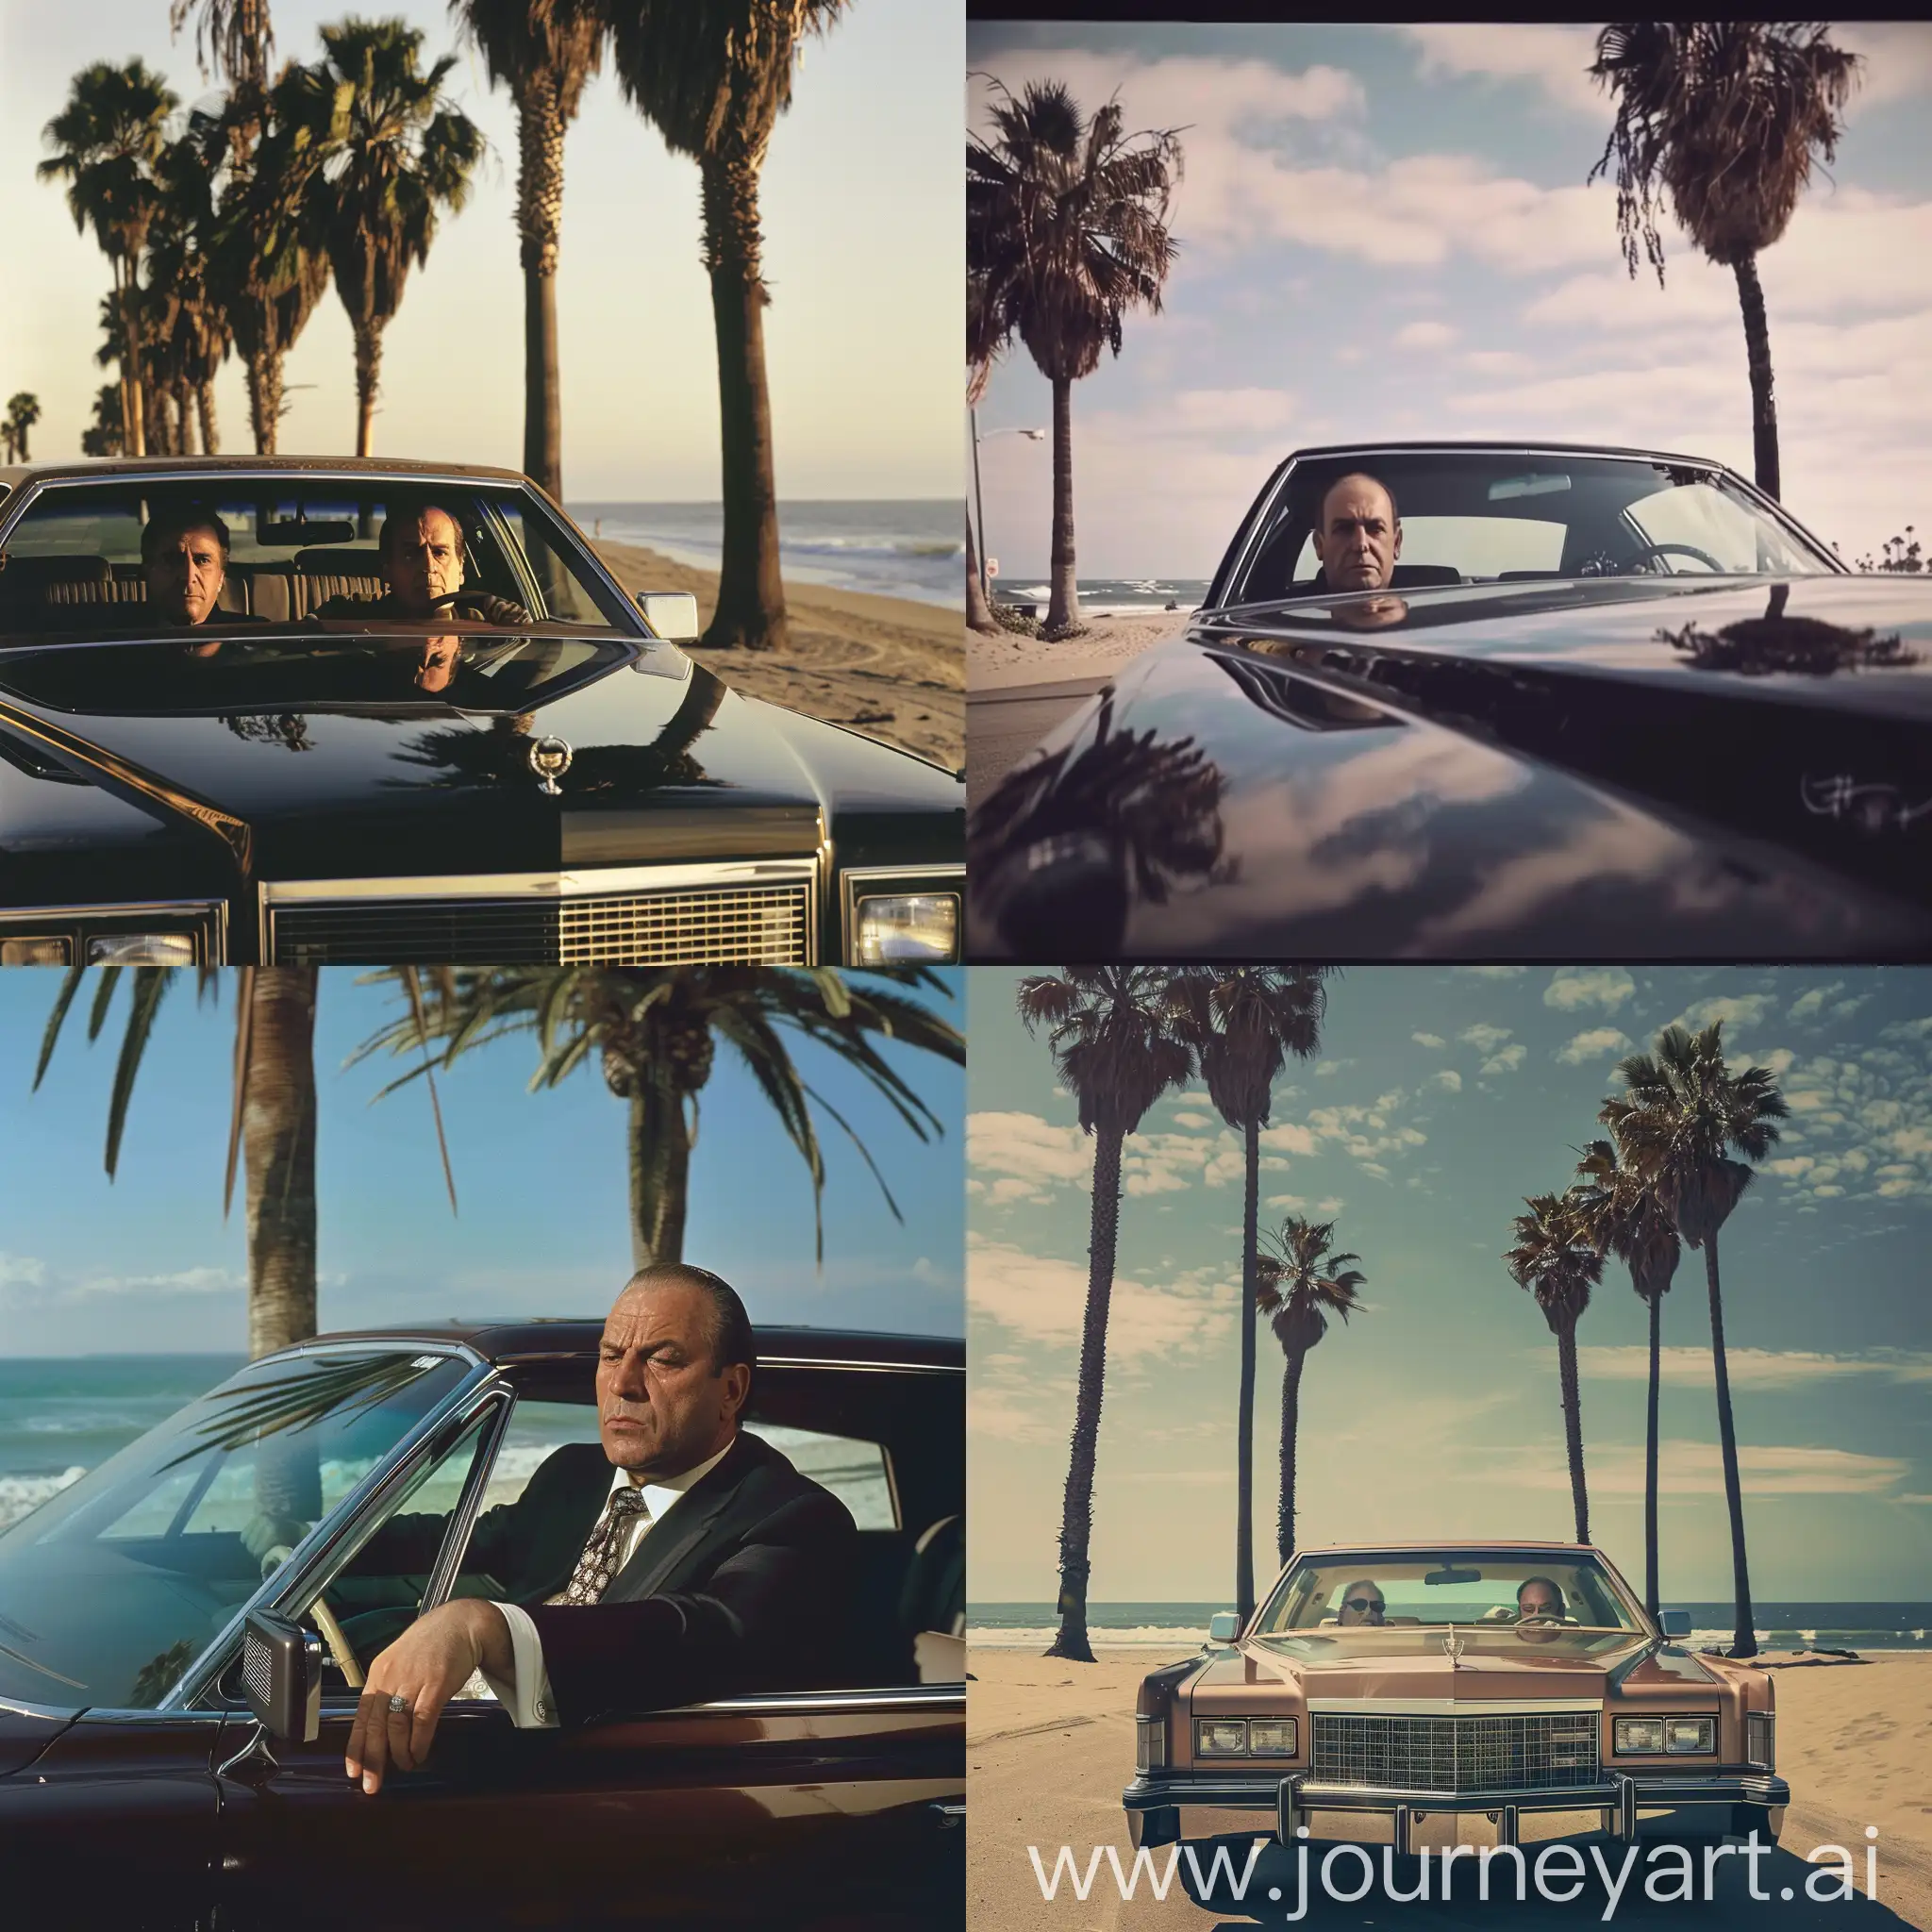 Tony Sopranos  drives cadillac in California near the beach and palms